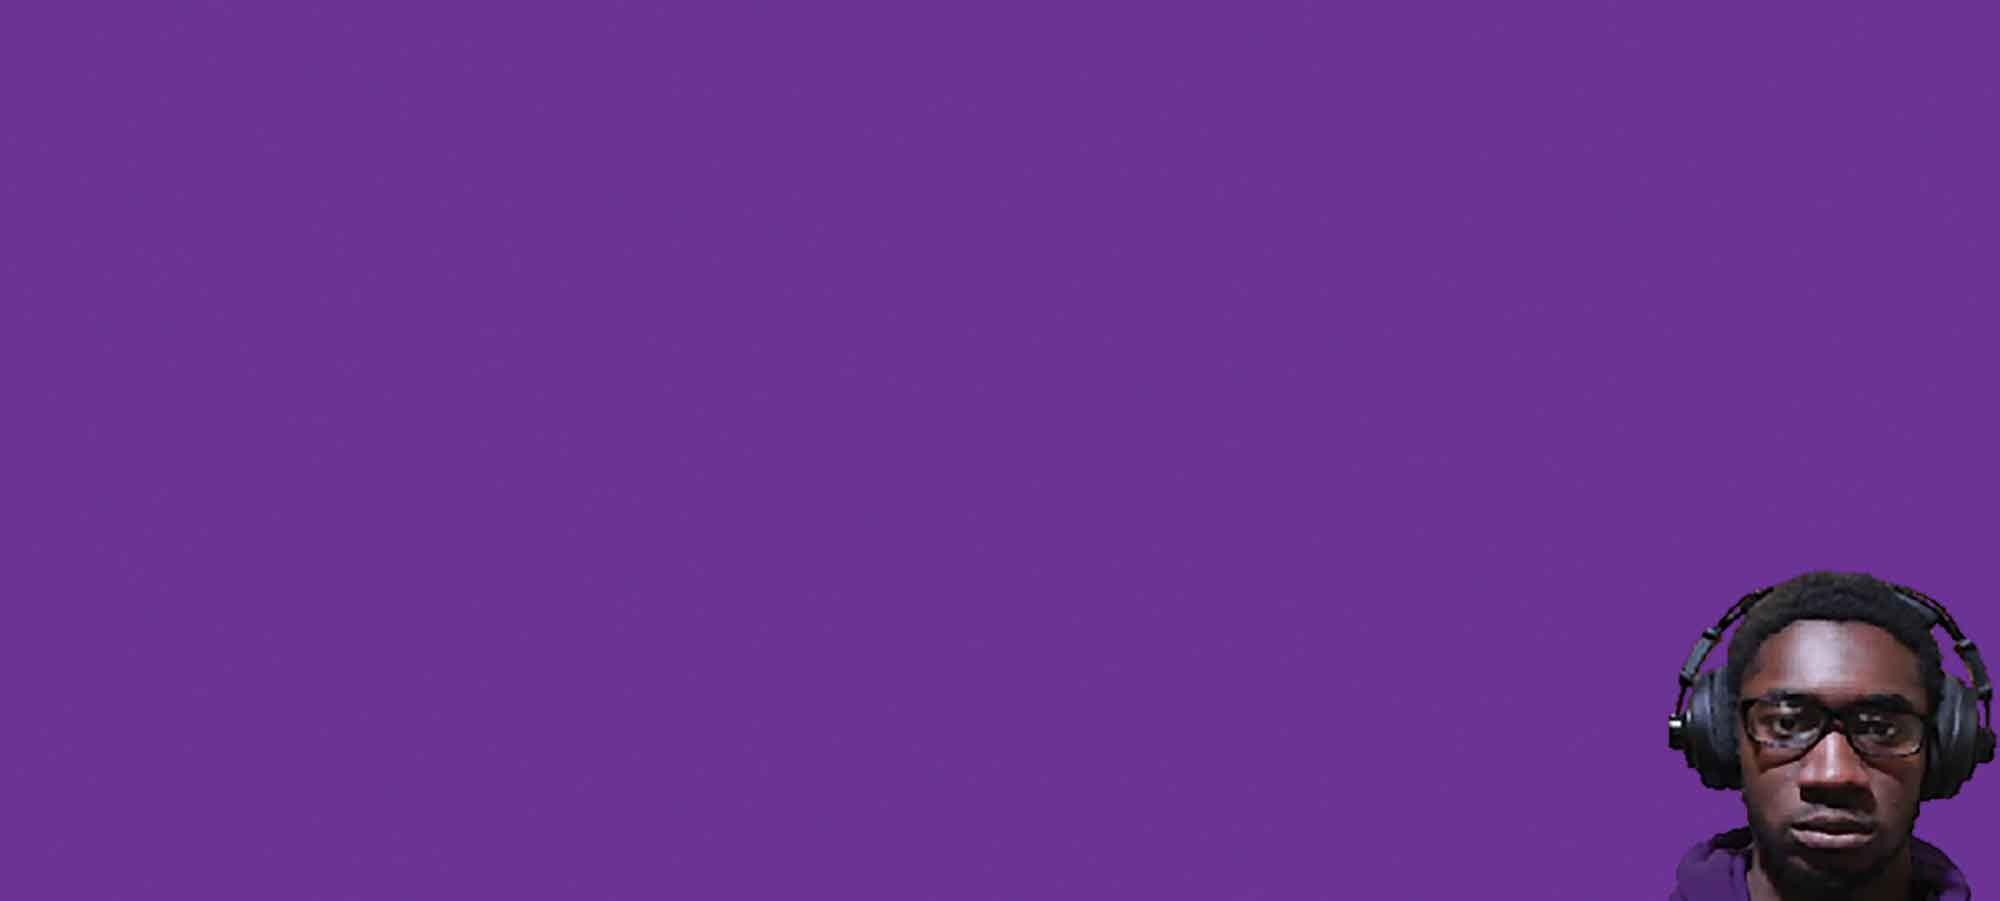 Glarses-Purple-Bruhmat-2